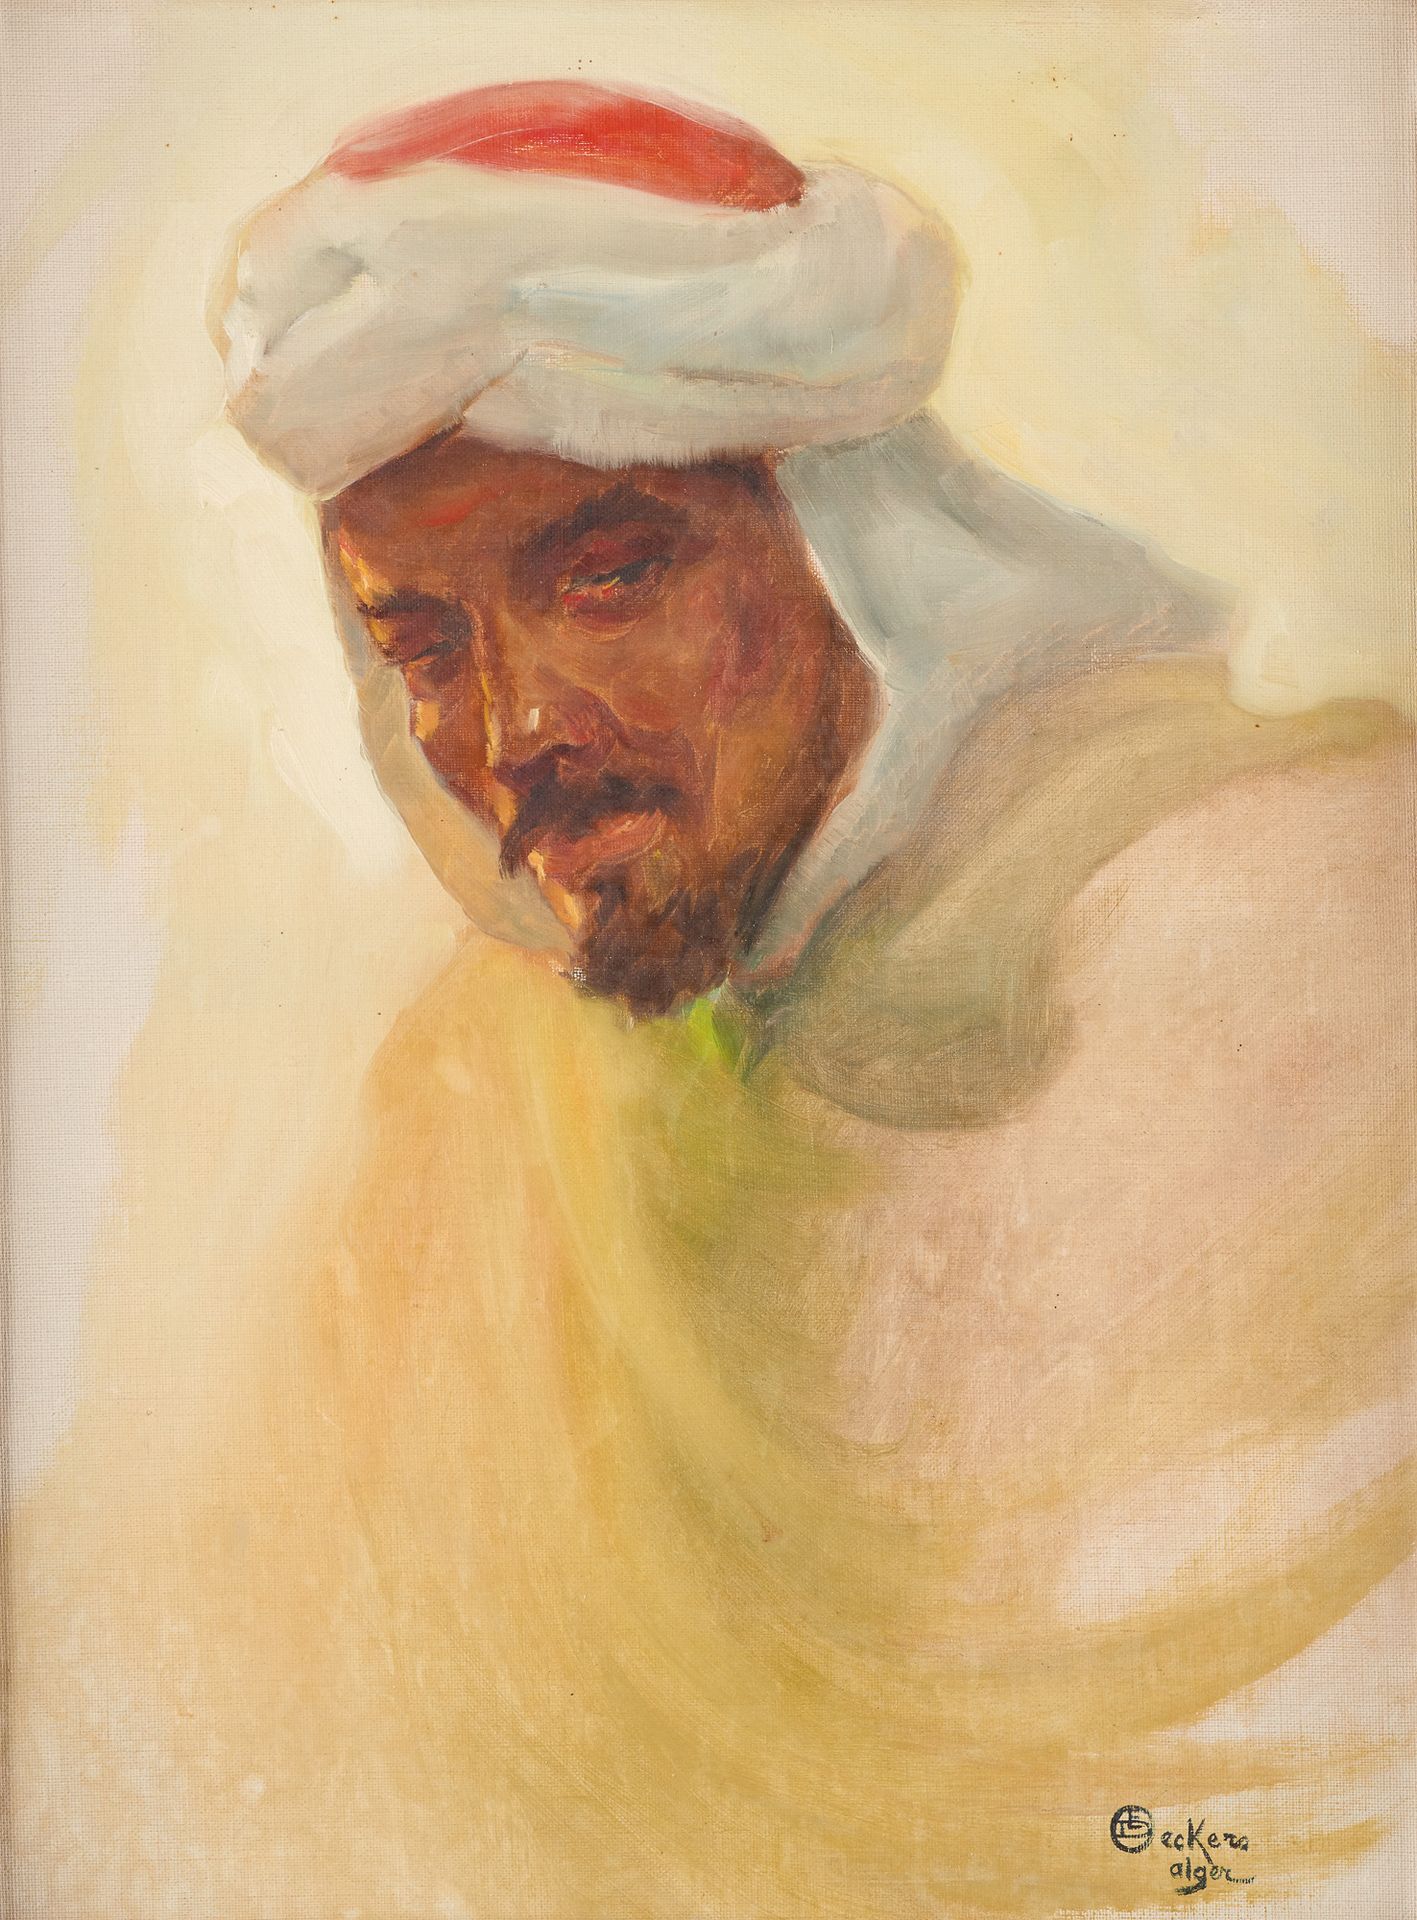 Émile DECKERS École belge (1885-1968) Huile sur toile: Portrait d'un Algérien.

&hellip;